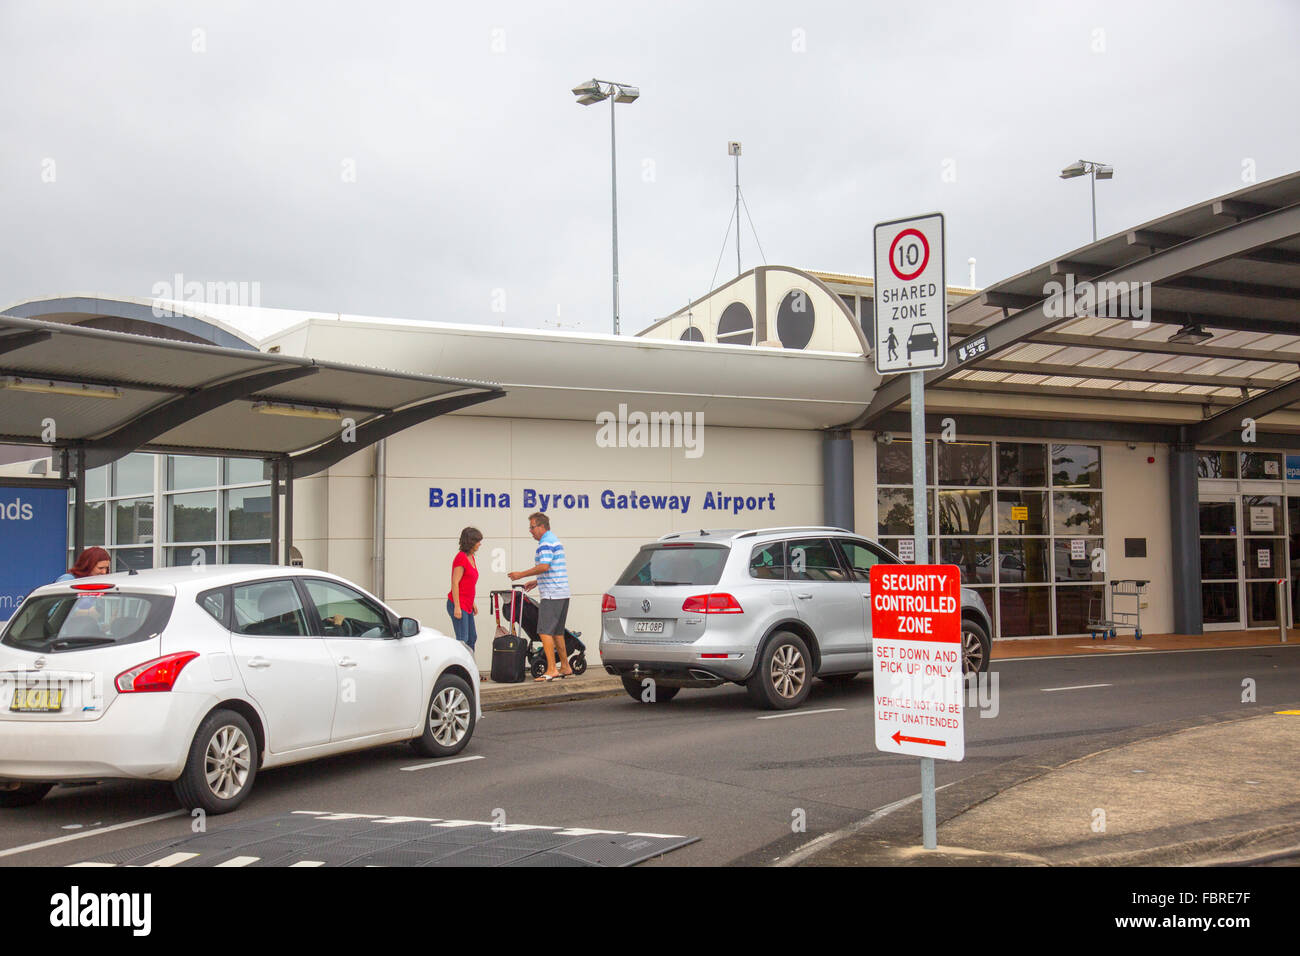 Ballina Byron Gateway Flughafen, bequem für den Zugang zu Byron Bay und Lennox Head Urlaub Bereiche, New-South.Wales, Australien Stockfoto